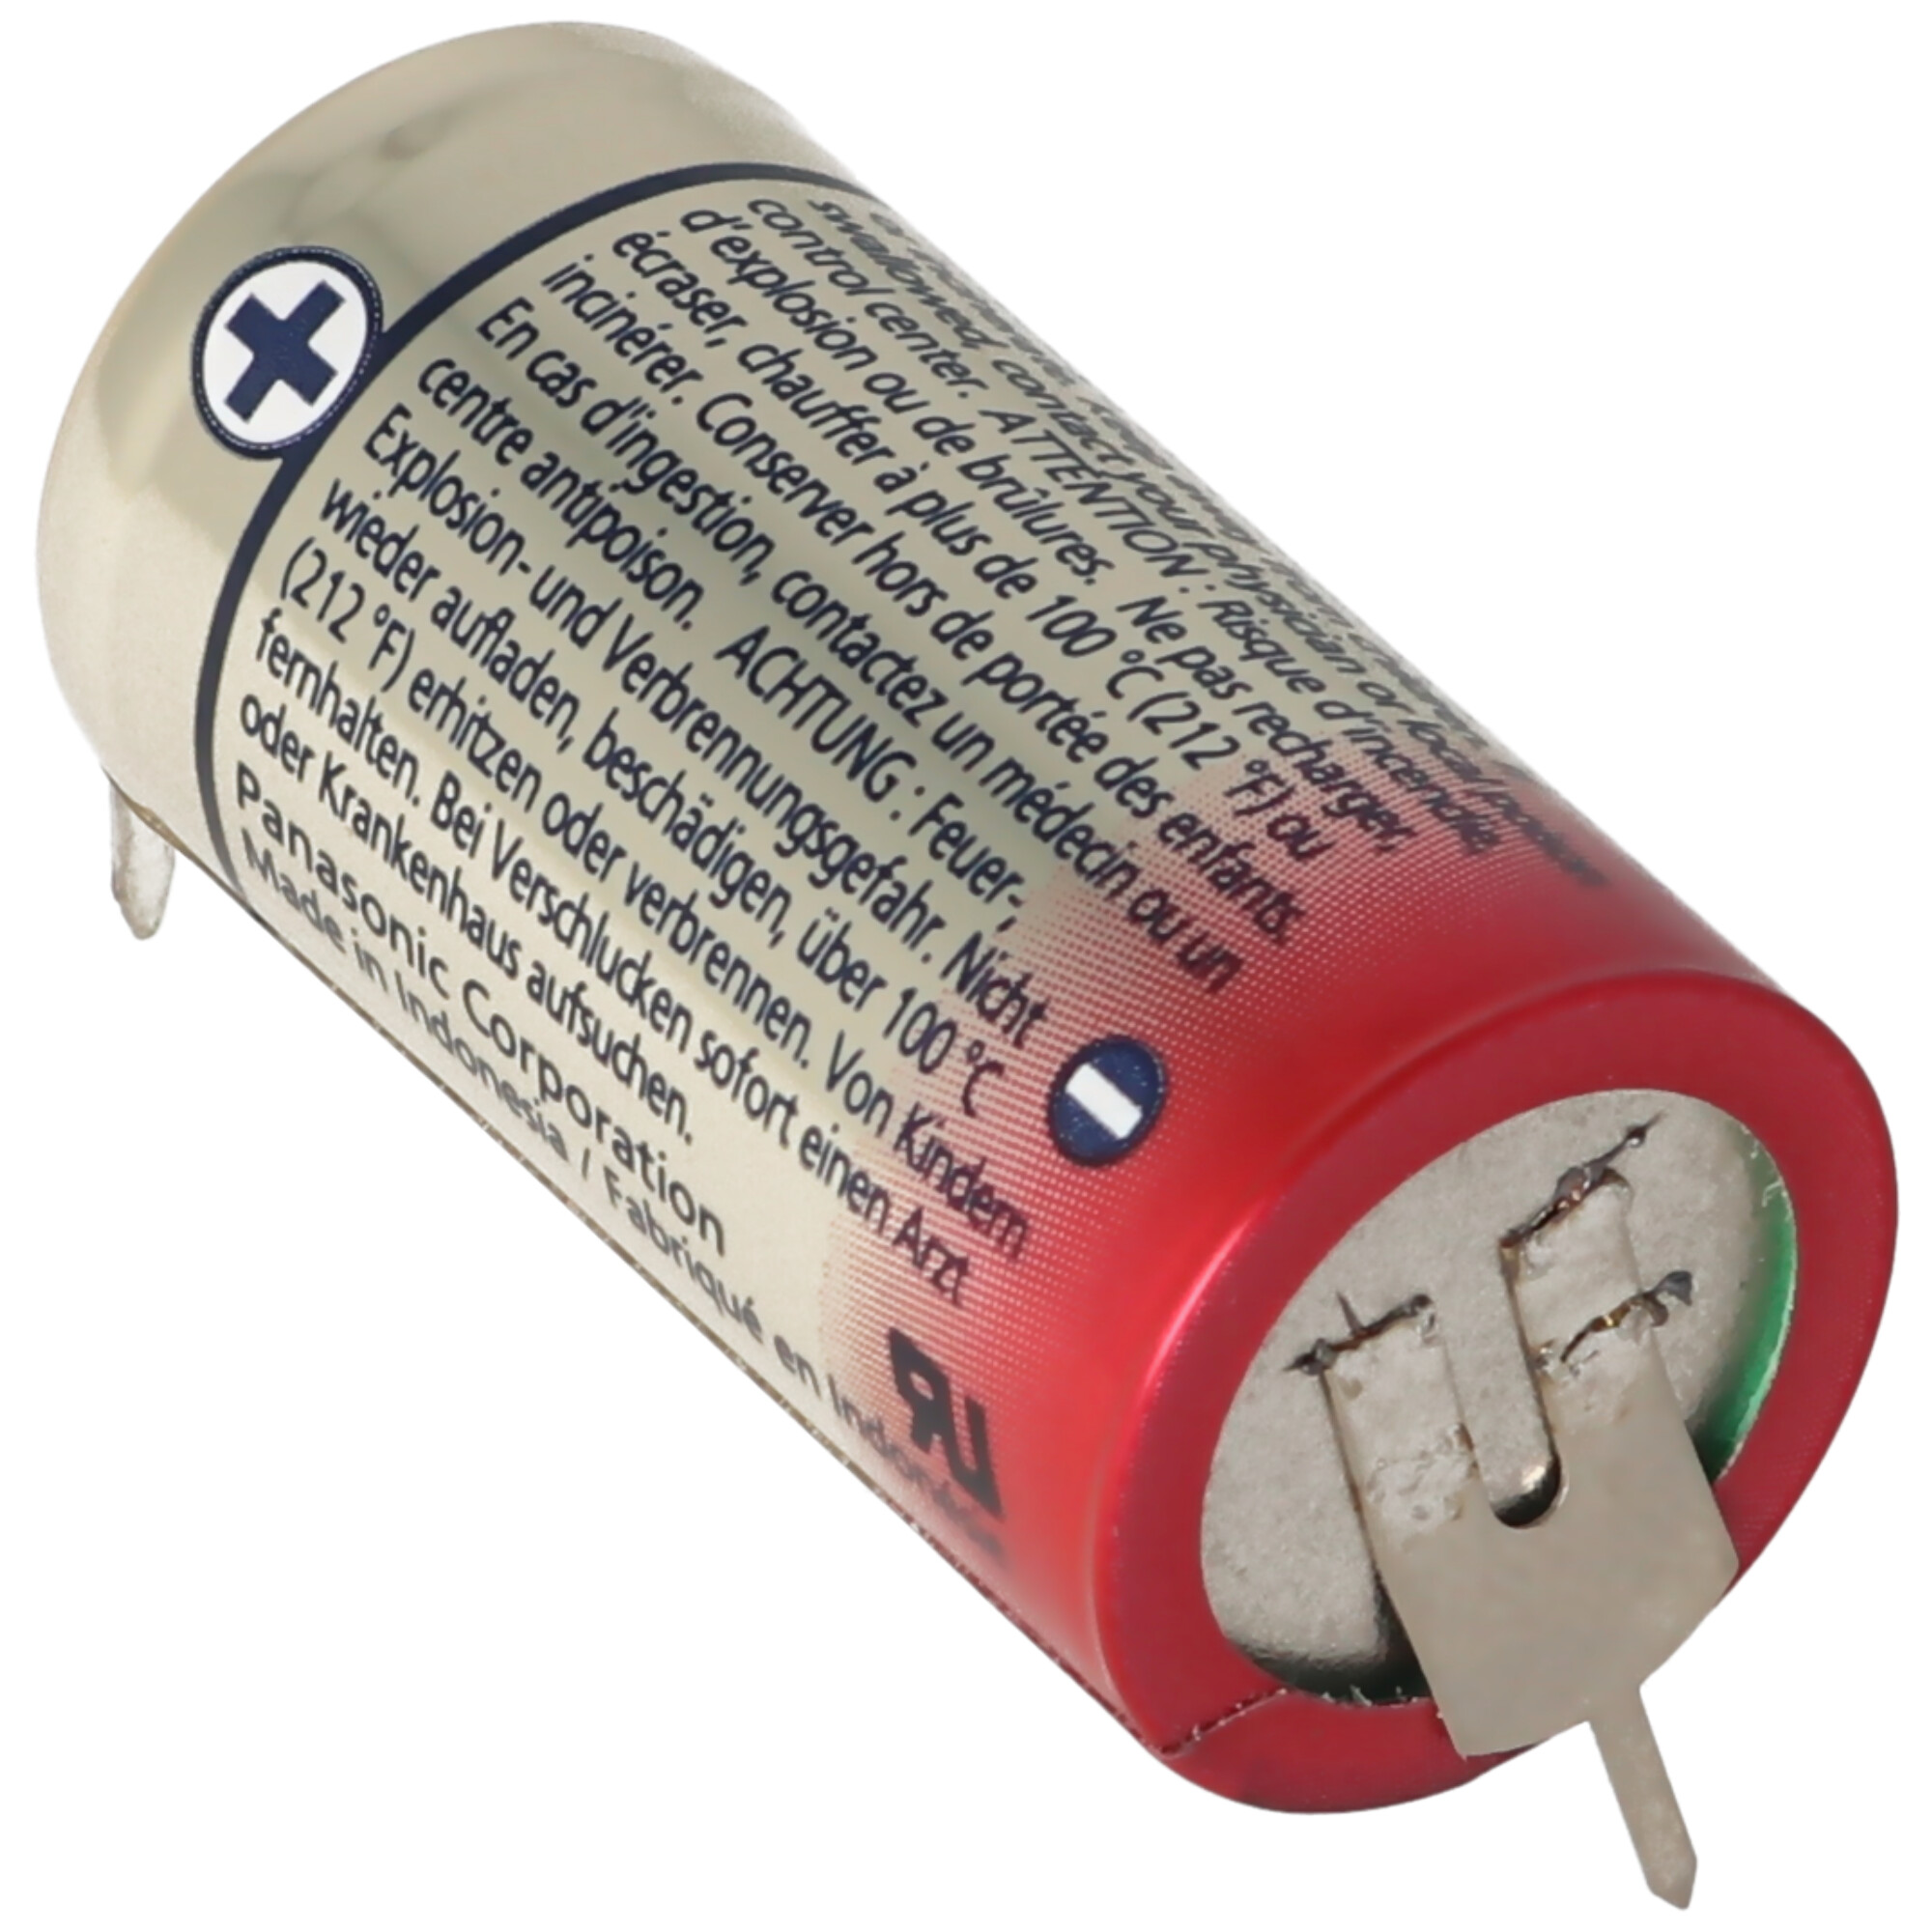 CR123A Batterie mit 3er Printanschluss 2er Print + 1er Print - Kontakten, Spannung 3 Volt Rastermaß 10mm